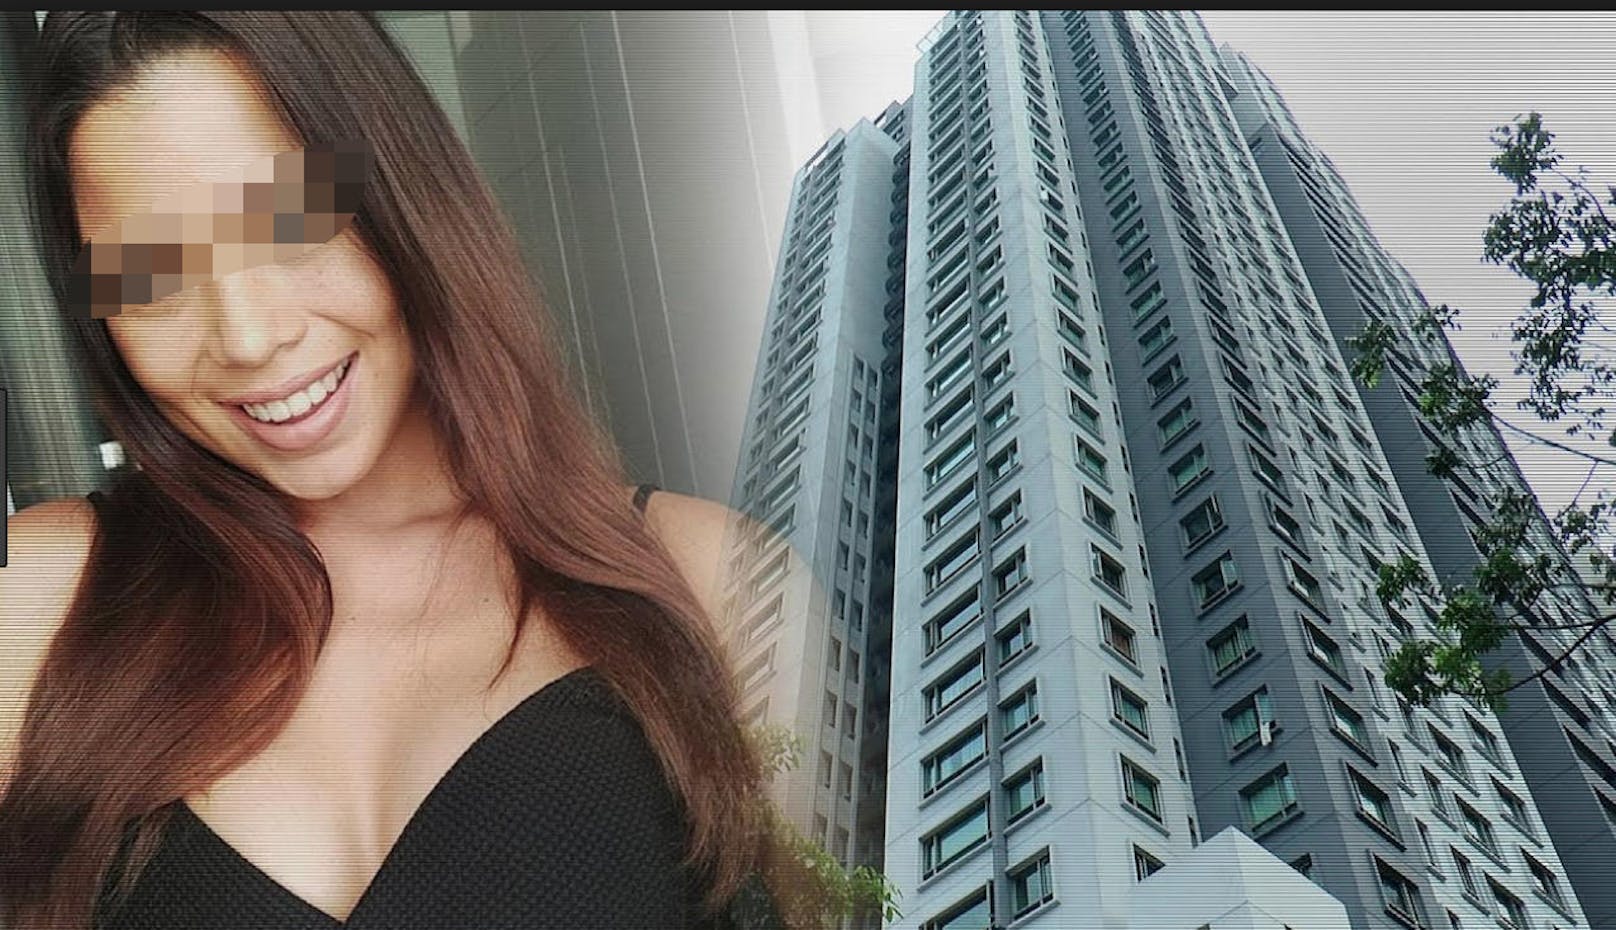 Das holländische Model Ivana S. (18) stürzte aus diesem Hochhaus in Kuala Lumpur von einem Balkon im 20. Stock in den Tod. Ein Unfall?